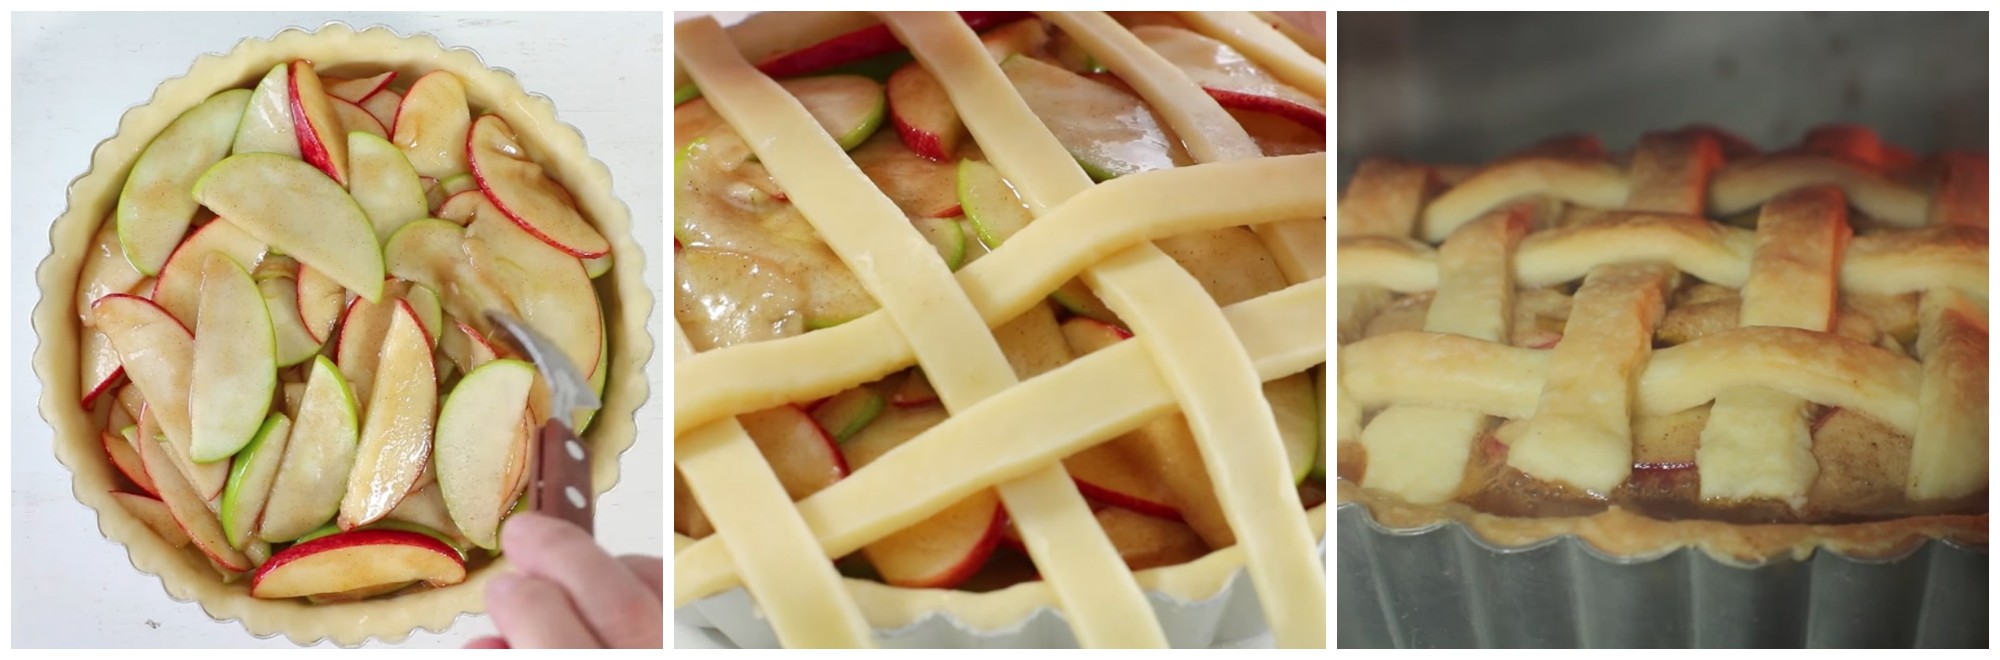 Dùng phới cho phần táo trong chảo vào và trộn đều, trang trí vài lát táo và cho vào lò nướng